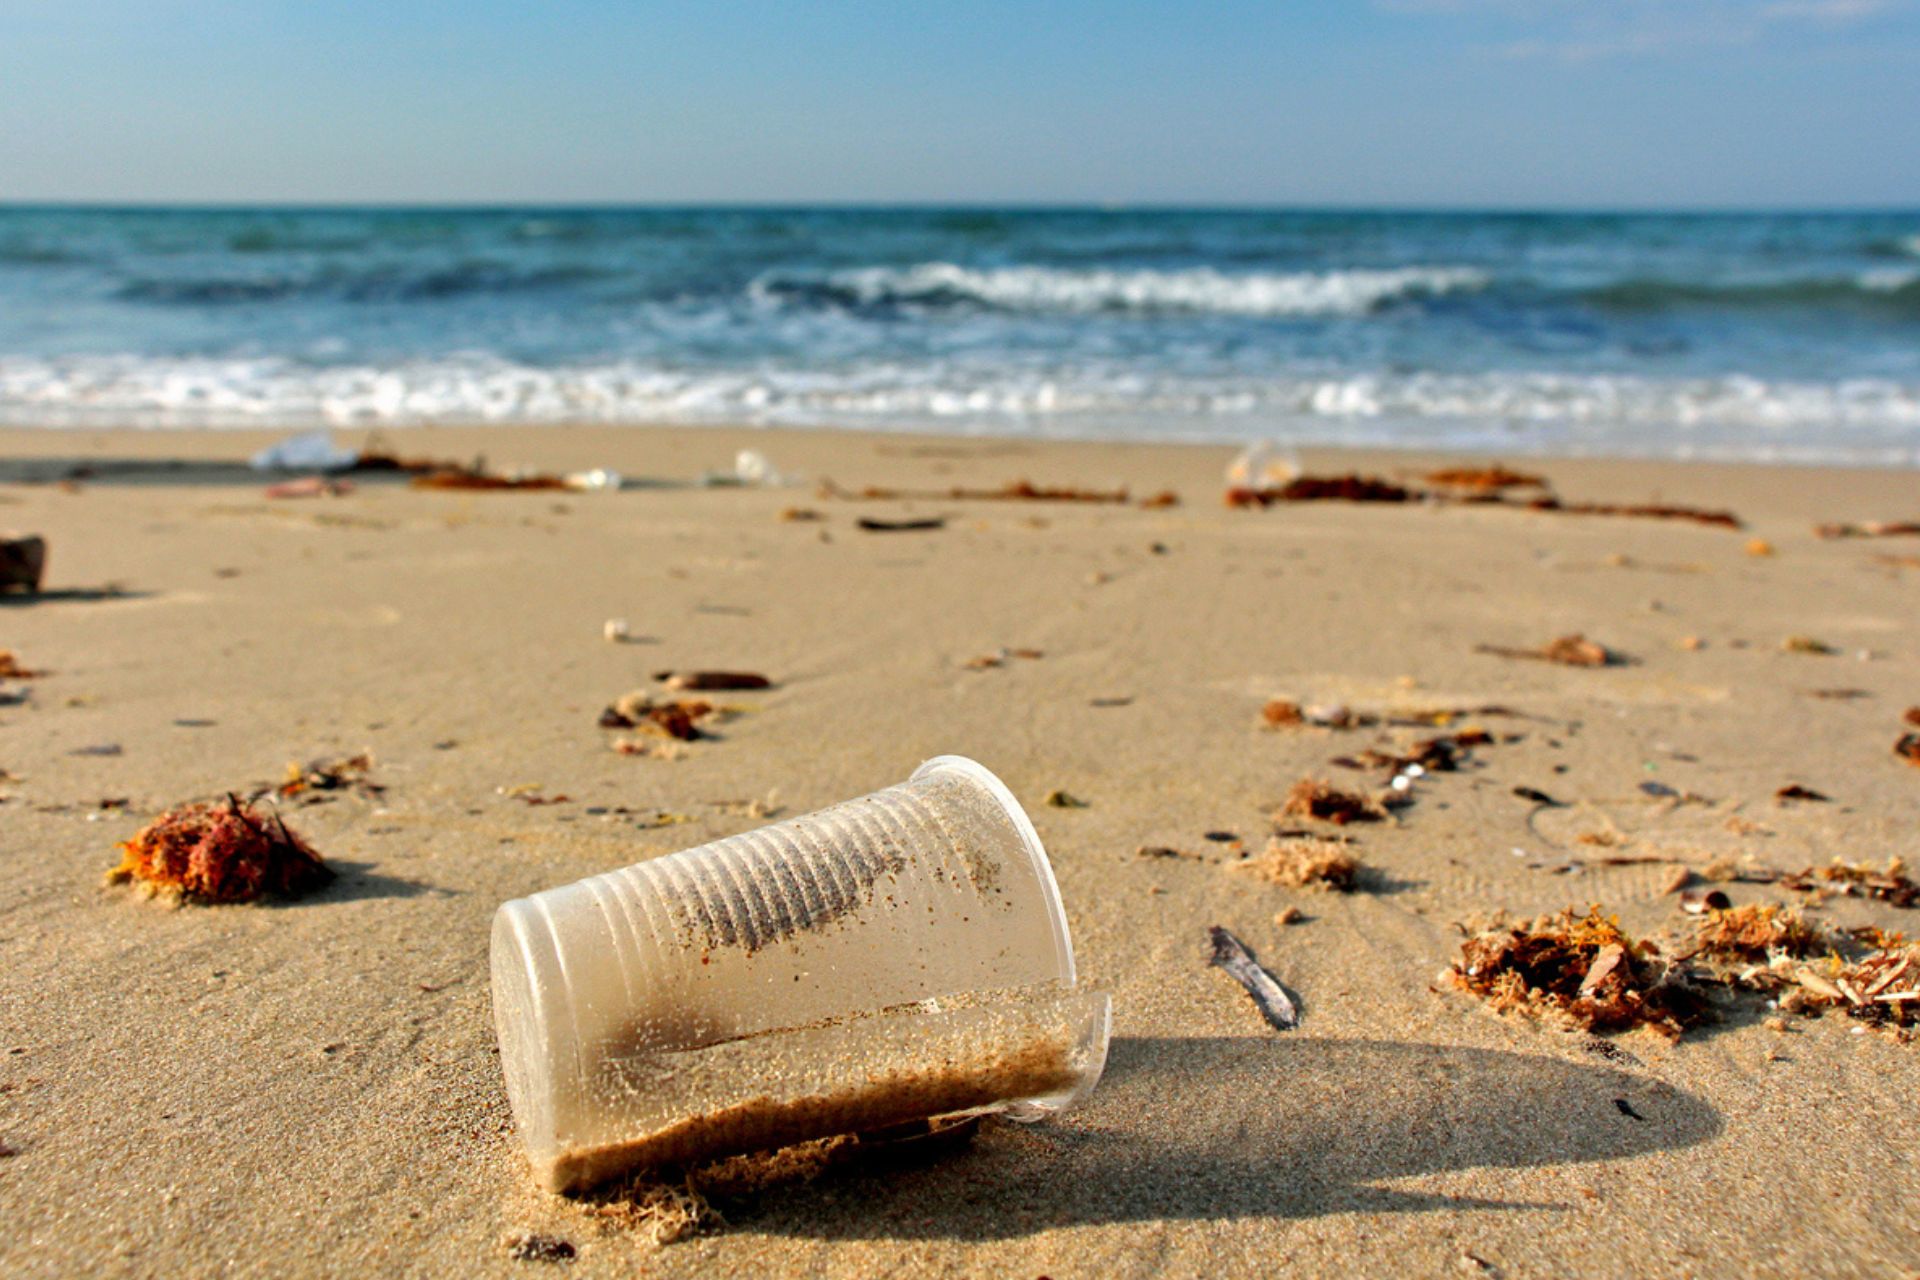 Zdroj do mora: plast opustený na pláži